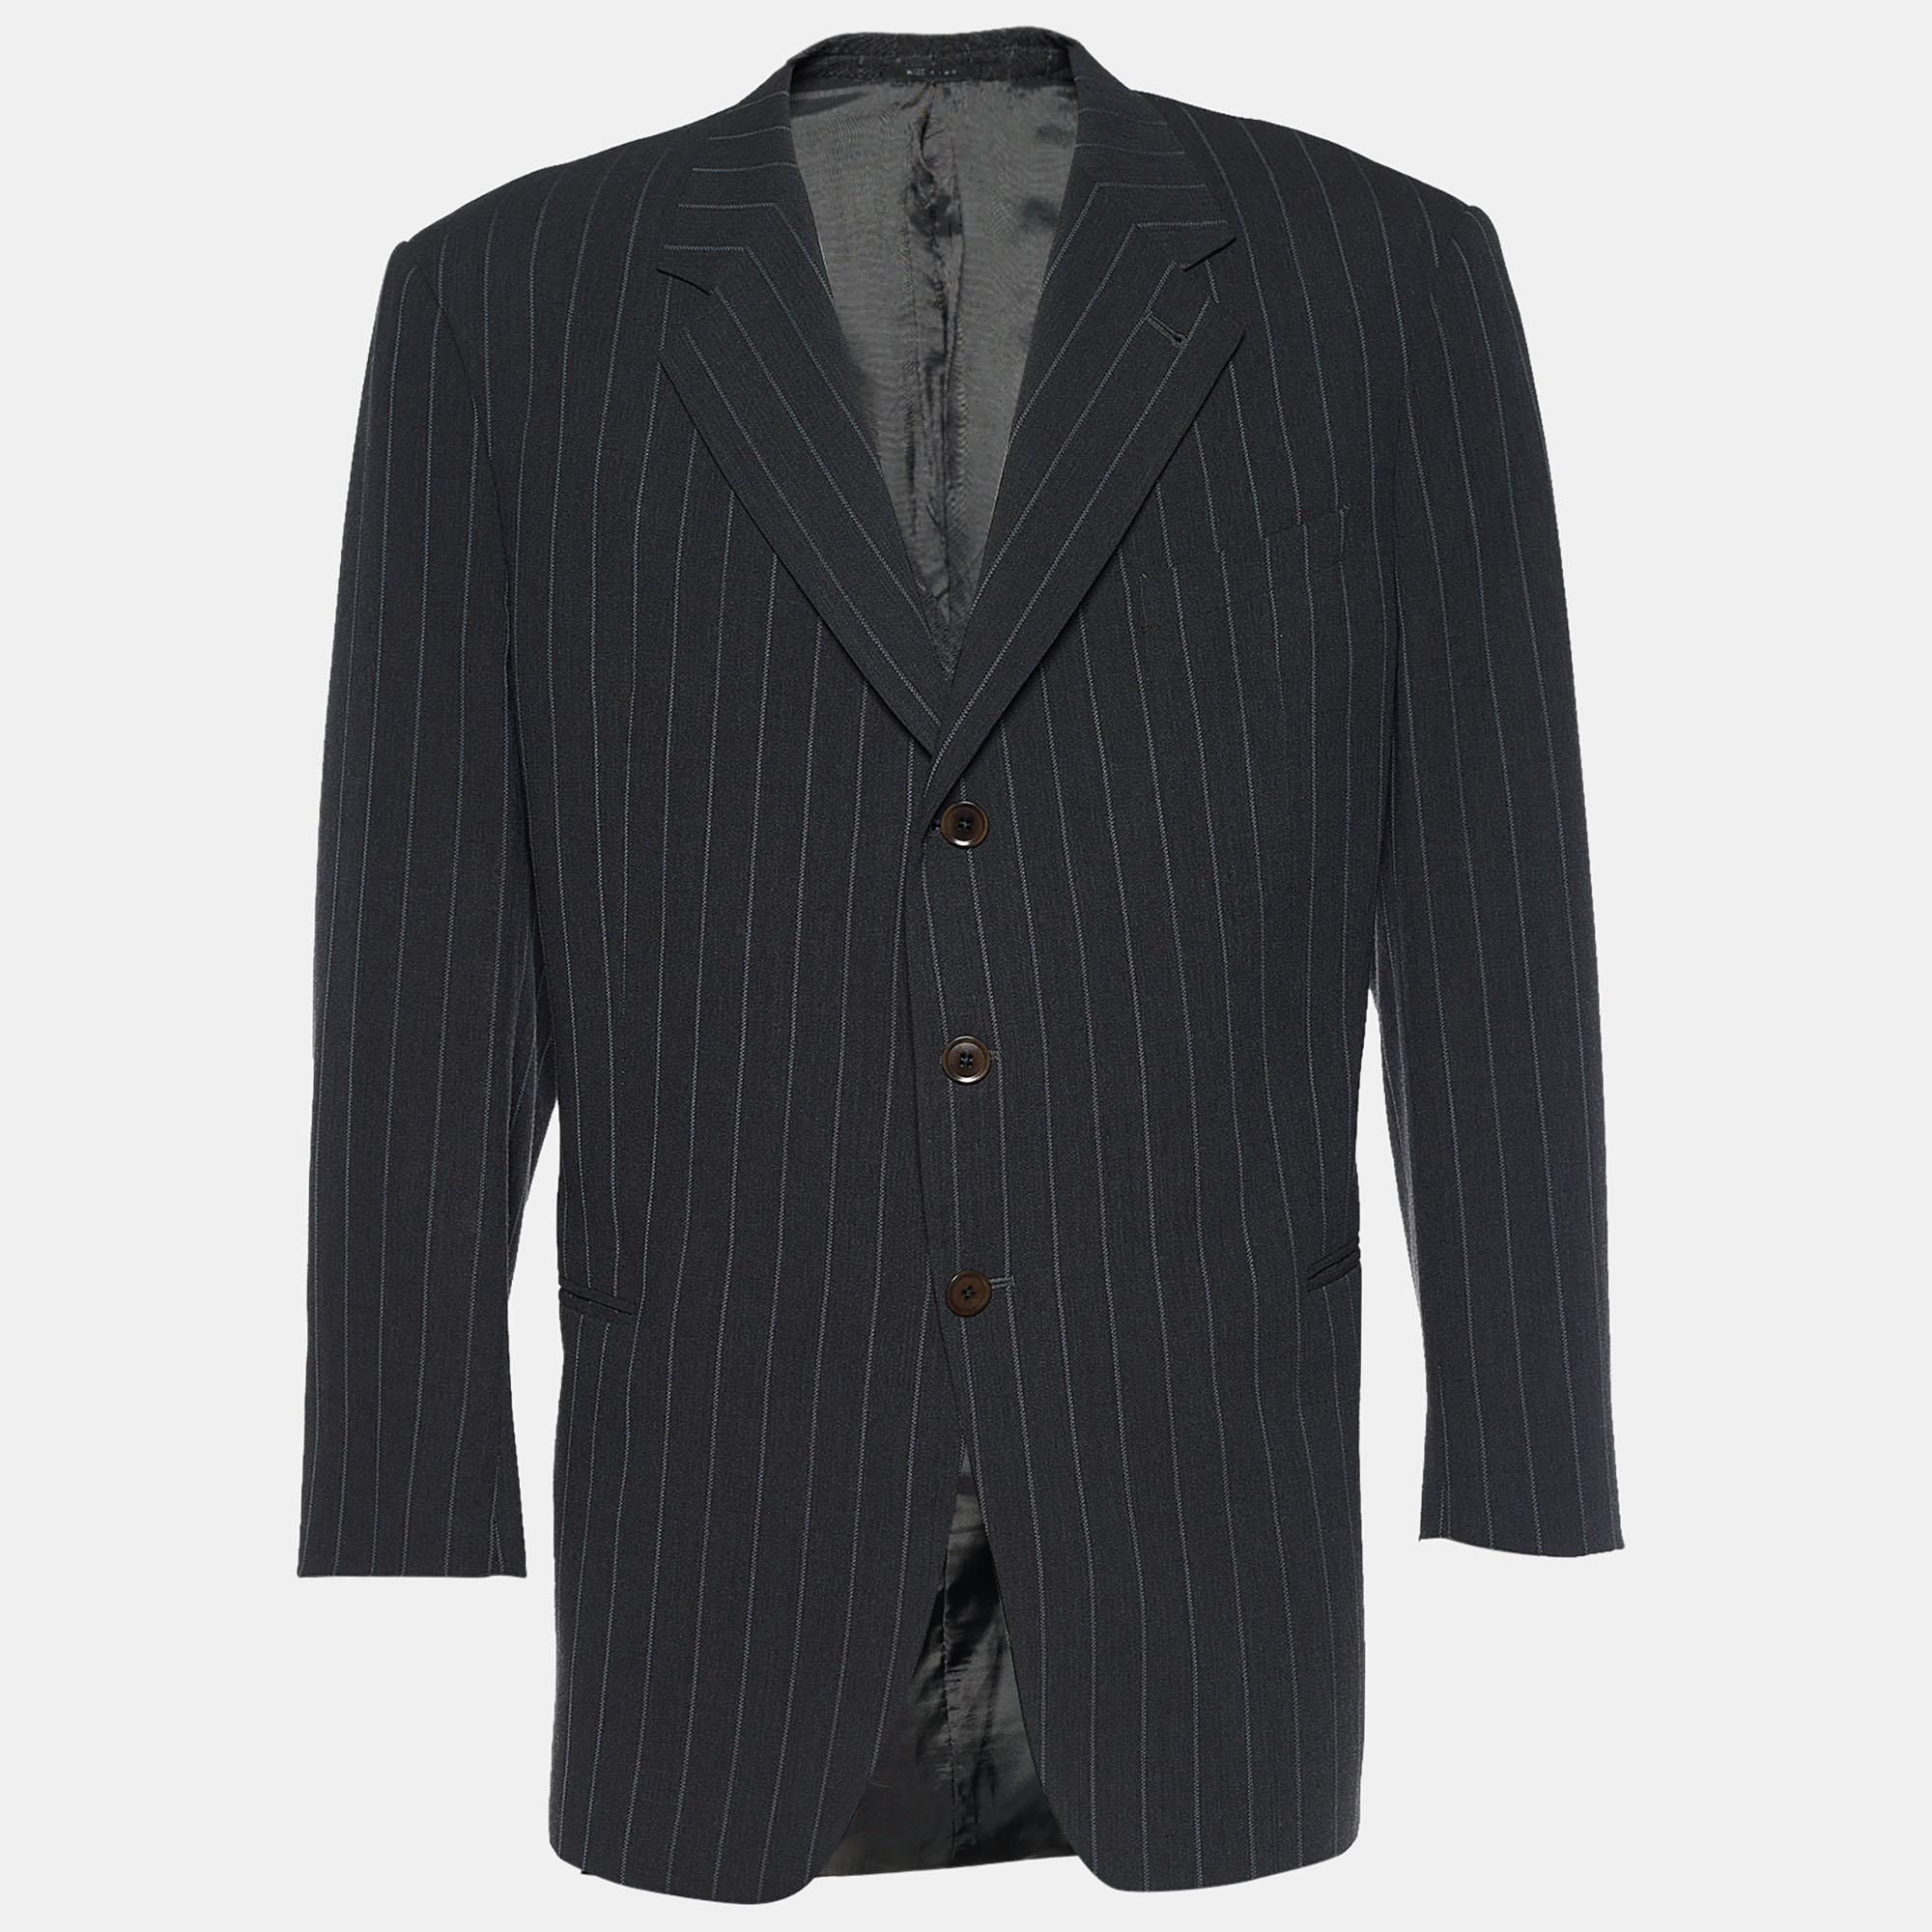 Armani collezioni grey striped wool single breasted blazer xxxl